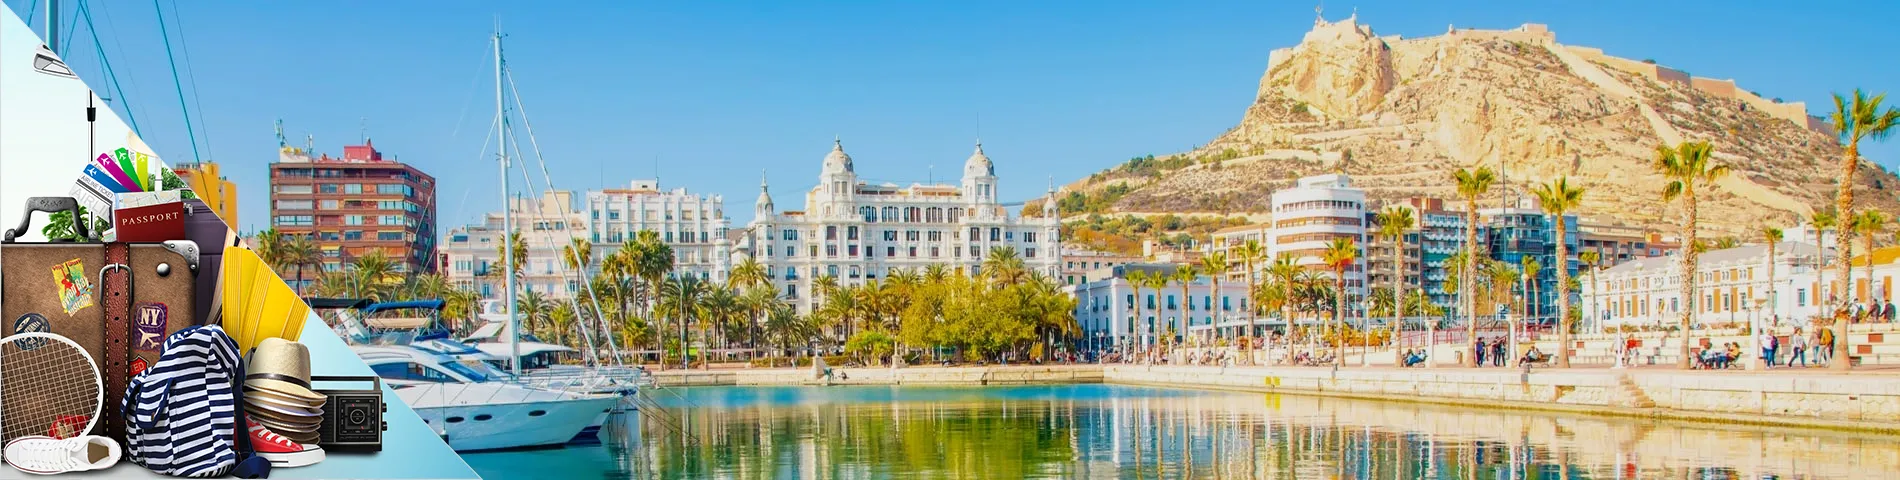 Alicante - Hiszpański dla Turystyki 